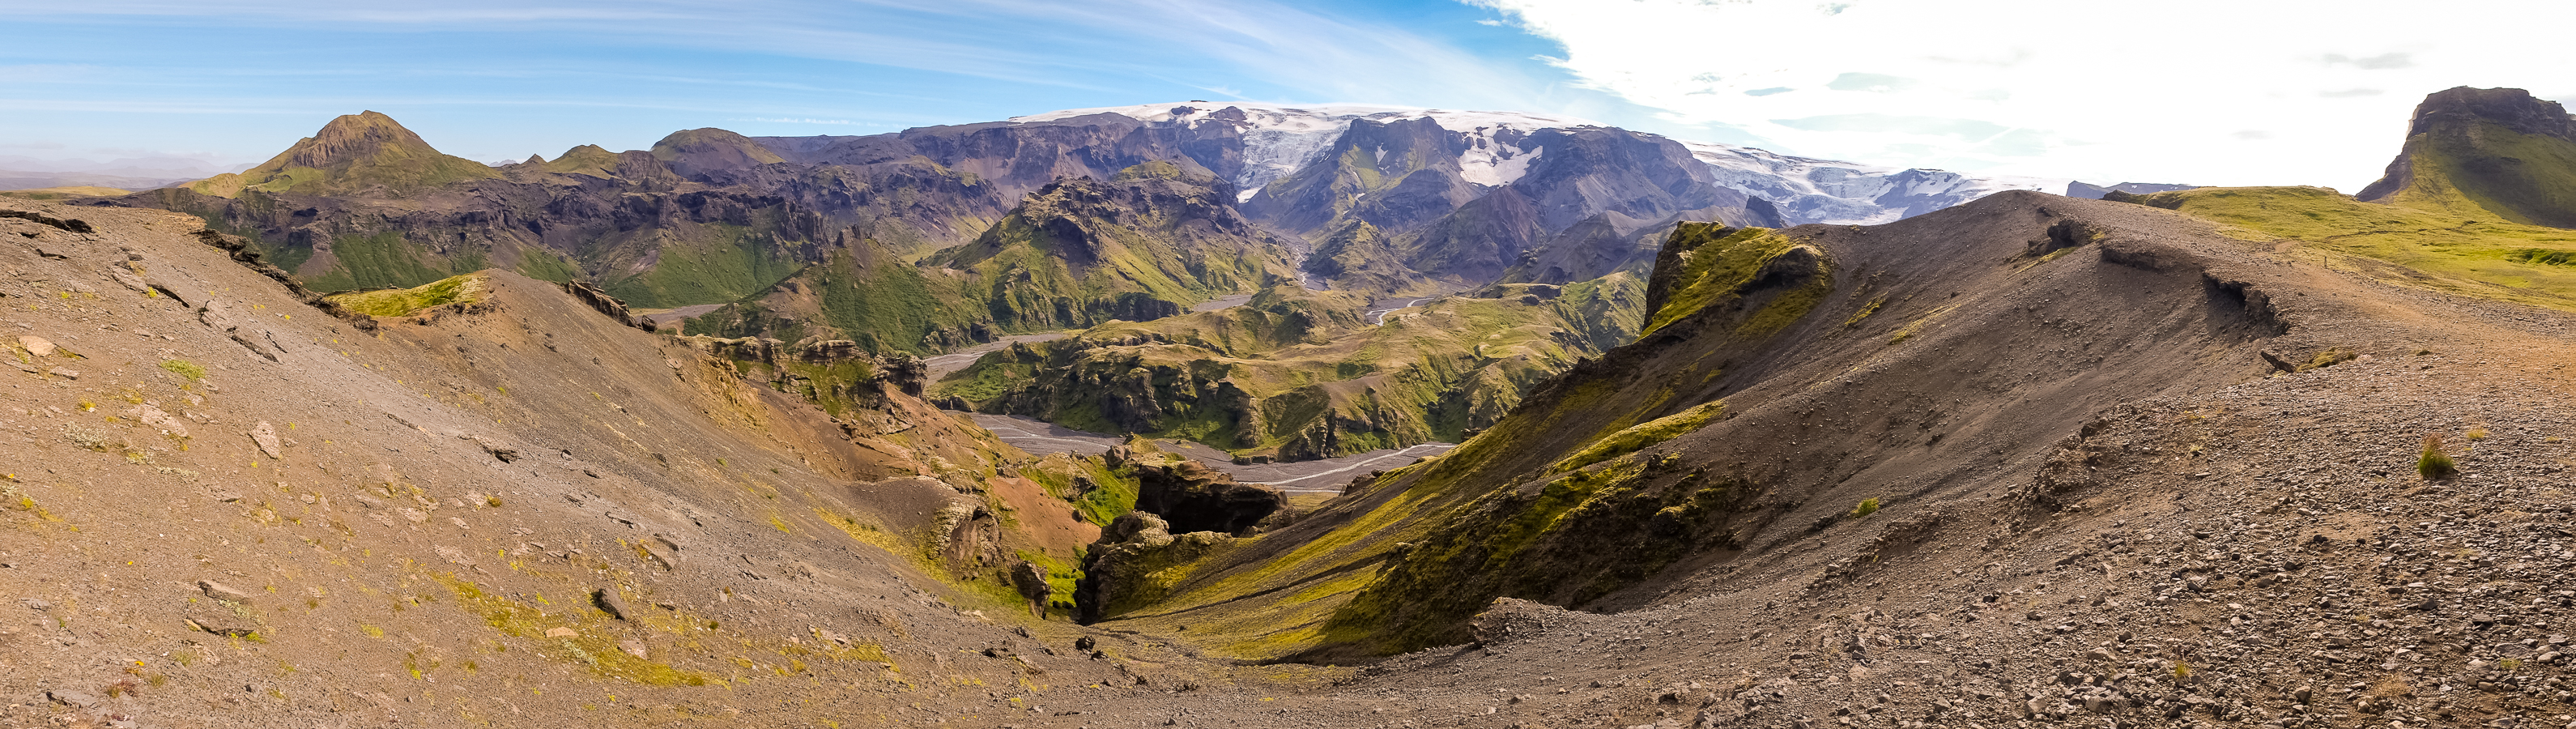 Goðalönd panorama - Laugavegur Fimmvörðuháls Trail - Icelandic Highlands